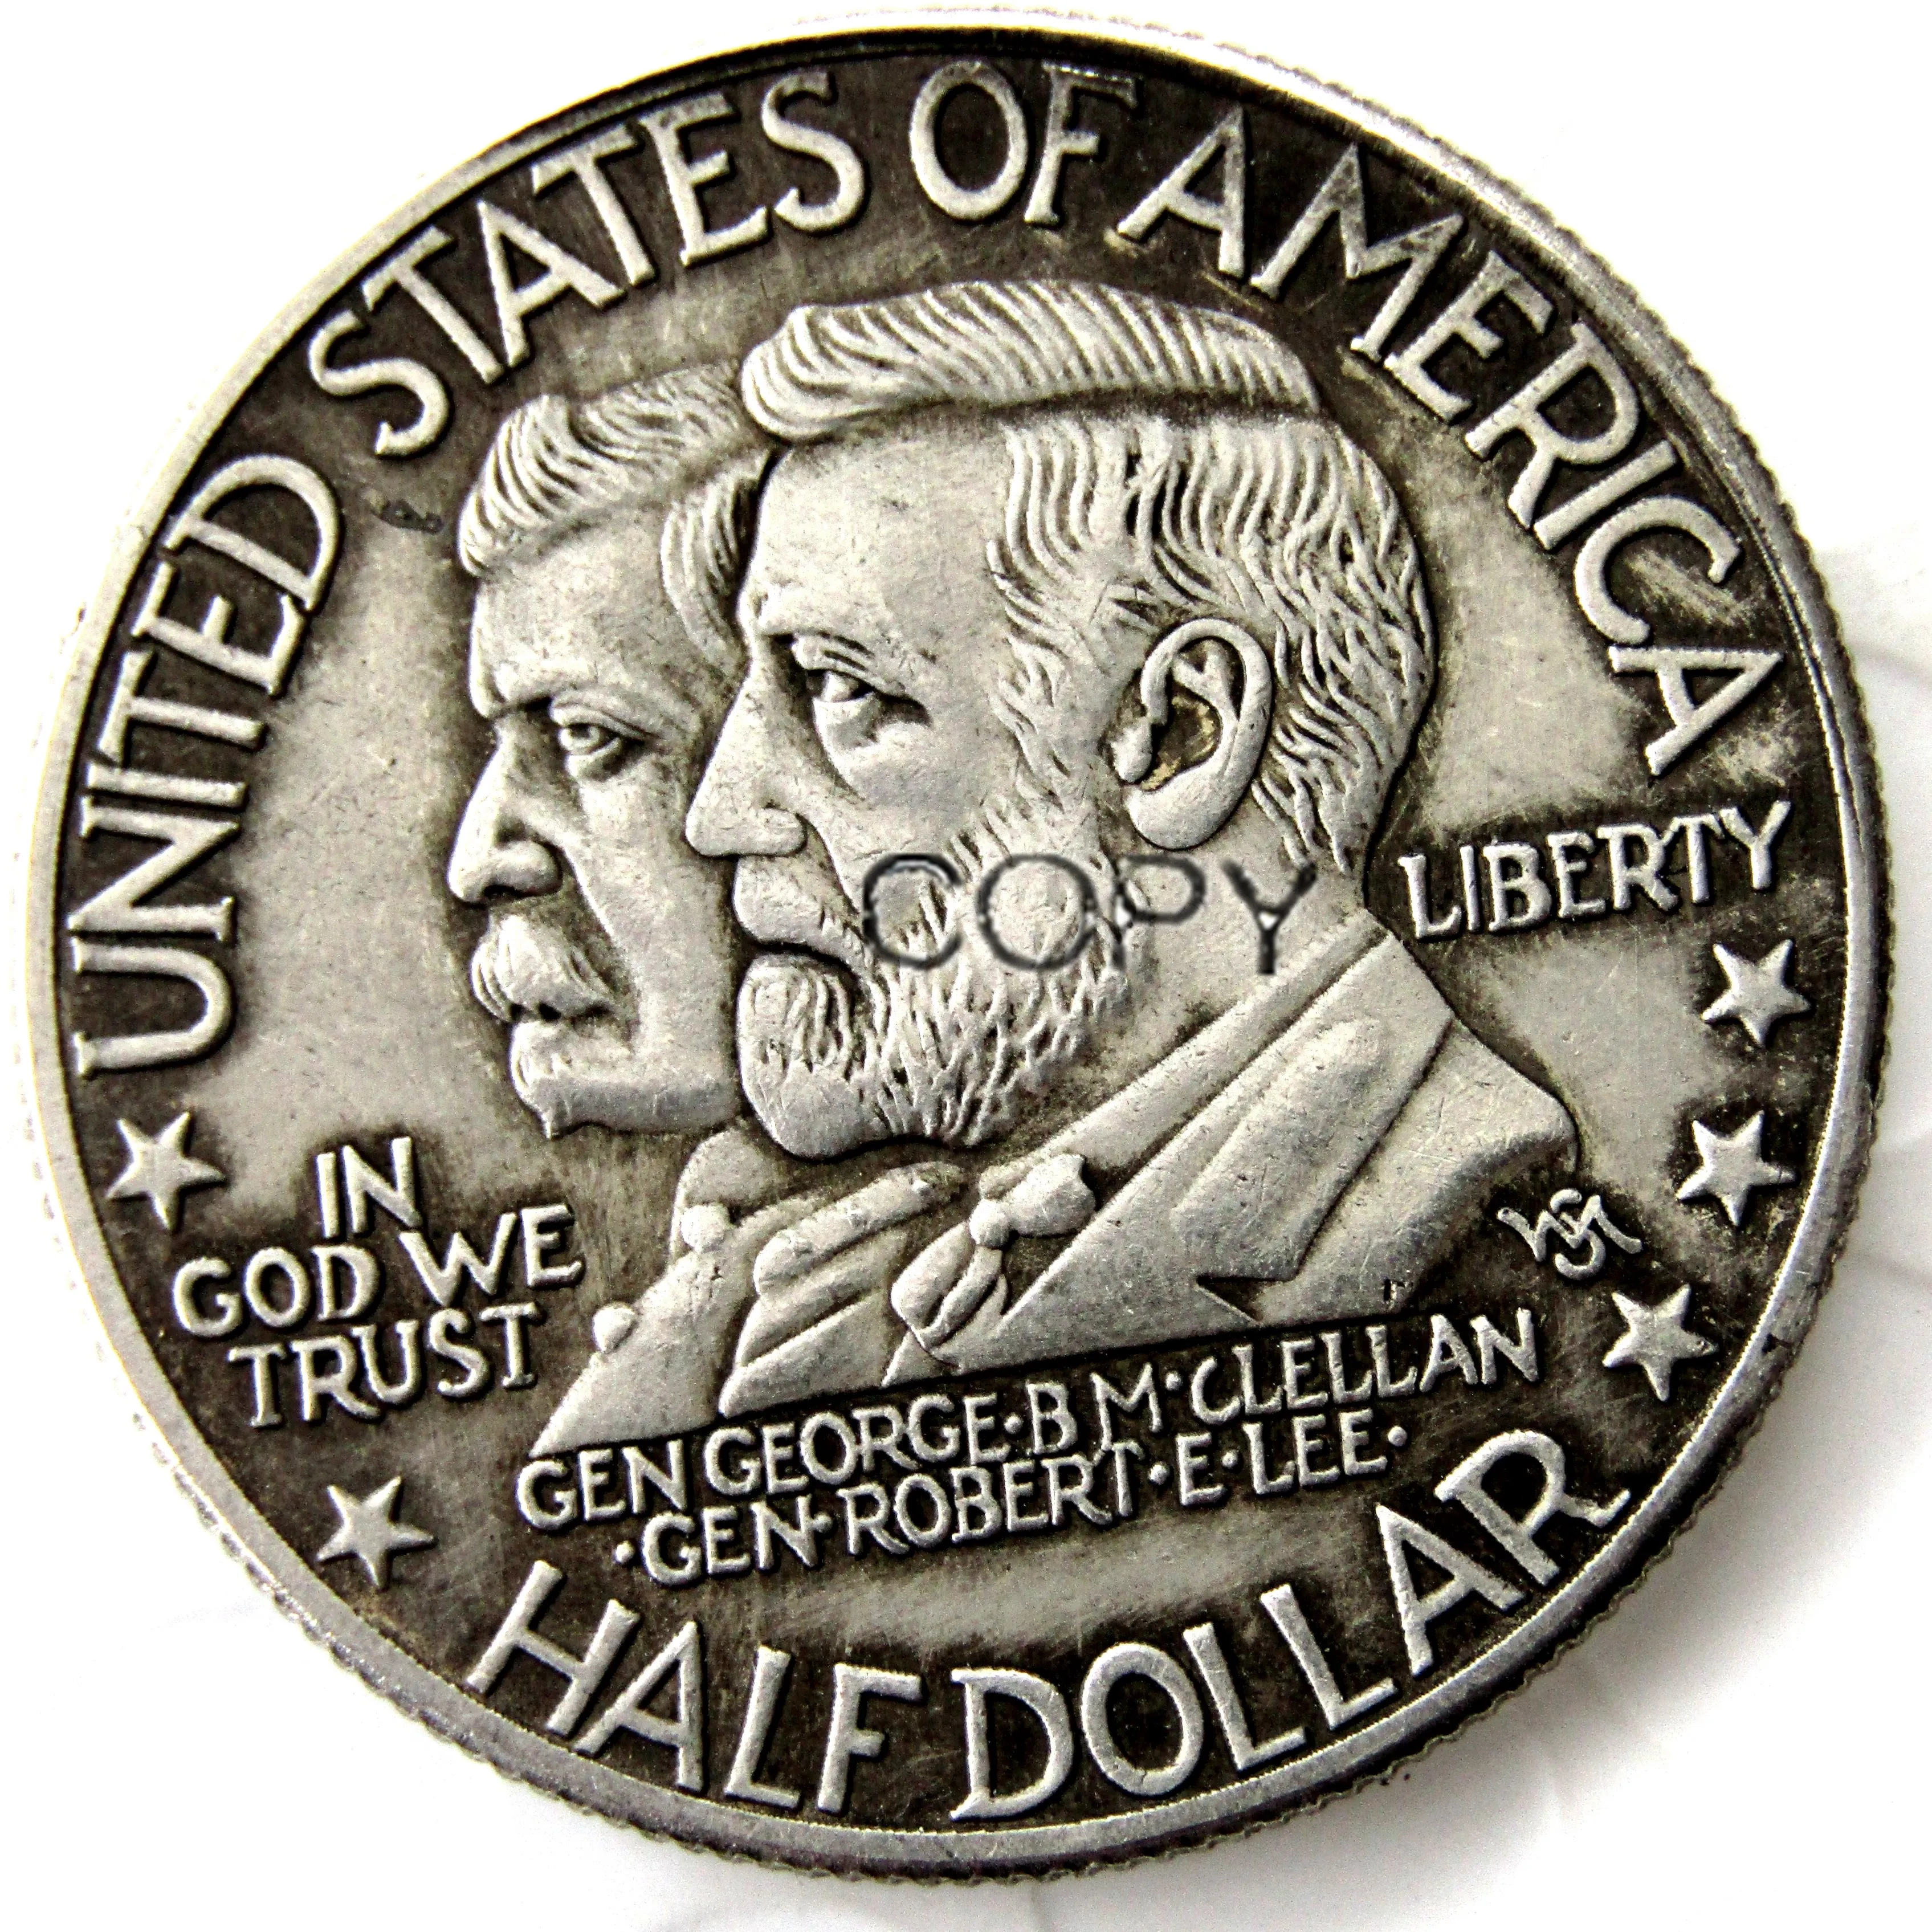 

1937 Antietam половина доллара Посеребренная копия монеты